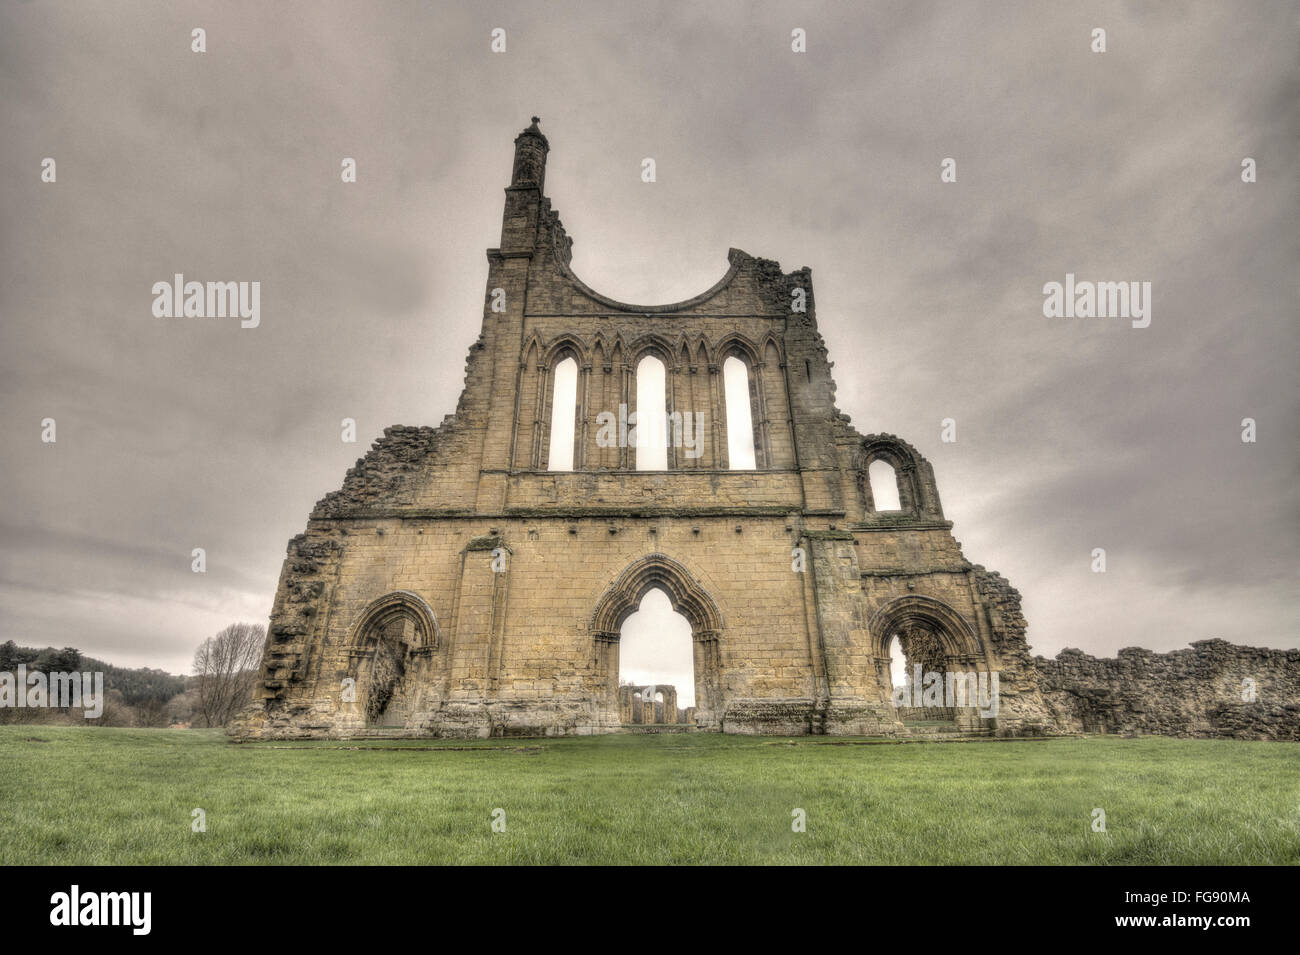 Byland Abbey, dans le Yorkshire, l'abbaye abandonnée Banque D'Images